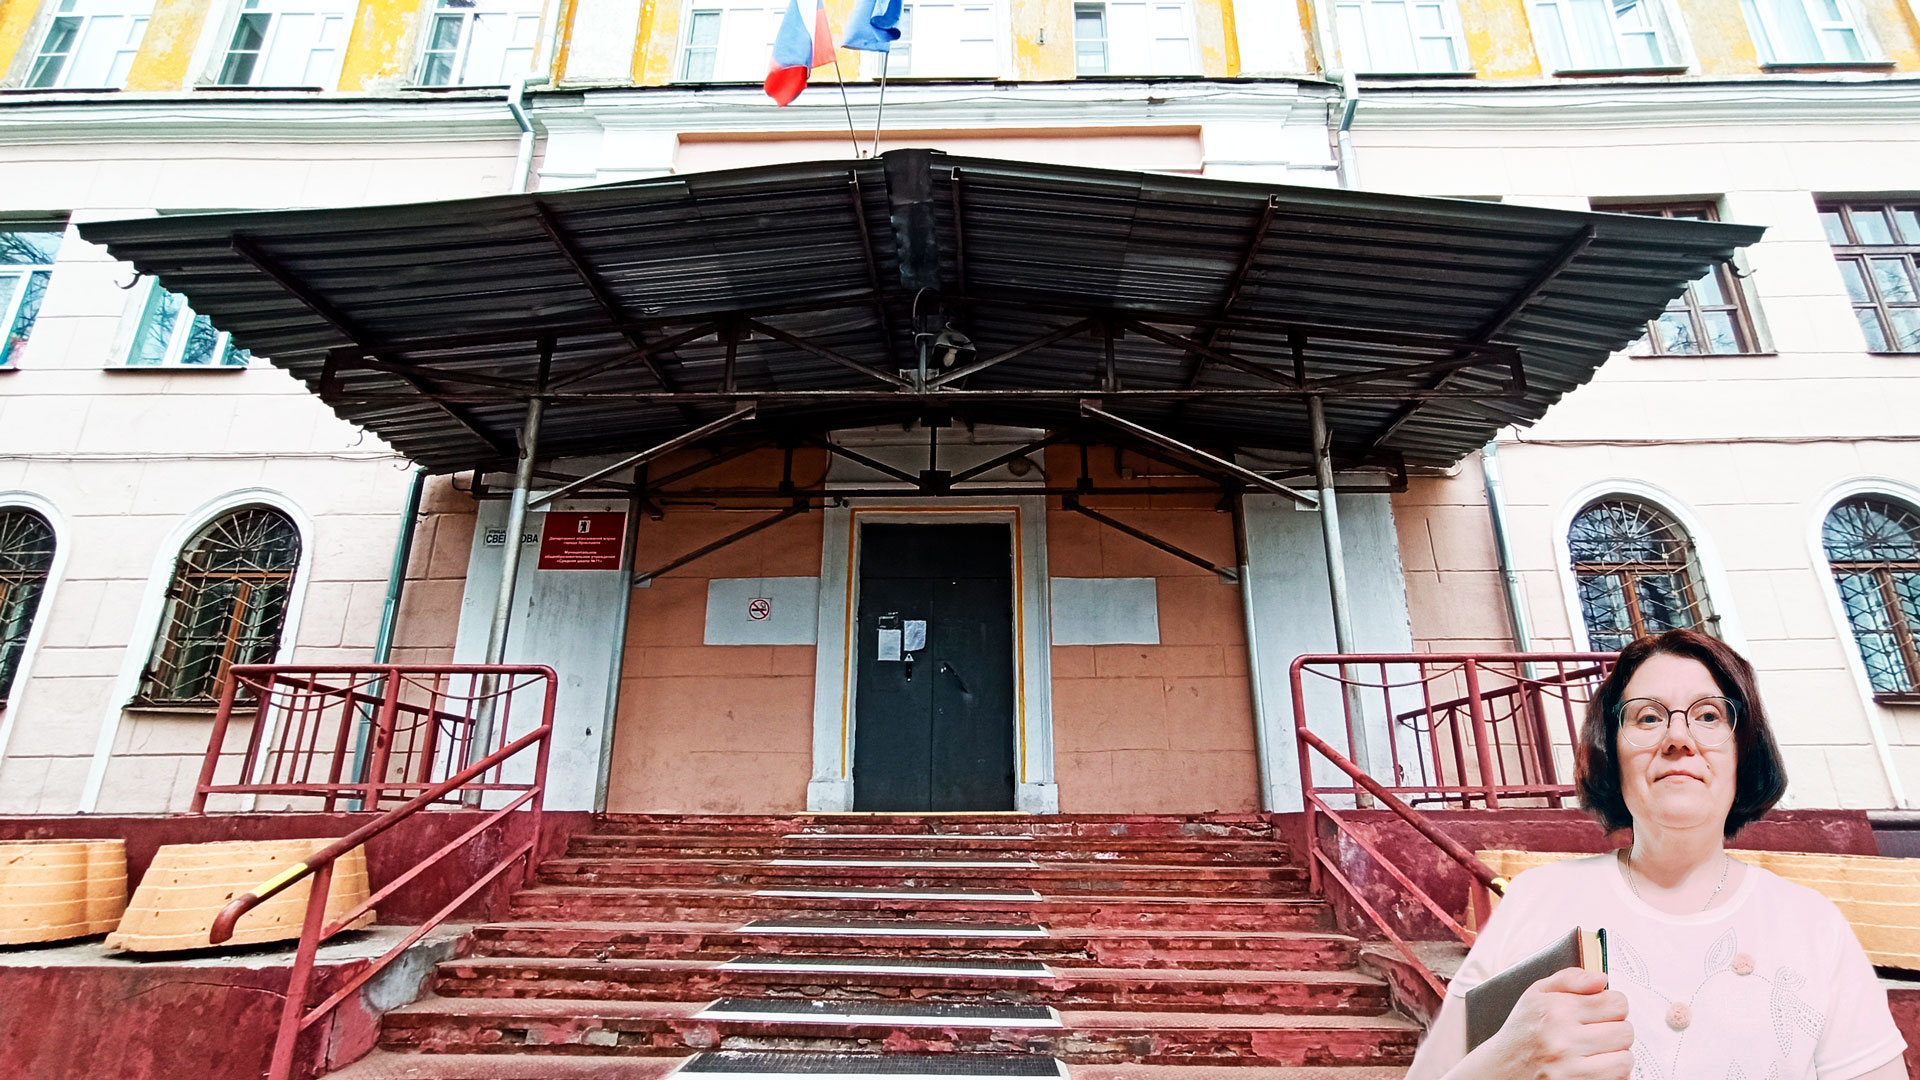 Школа 71 Ярославль: центральный вход в здание школьной организации.